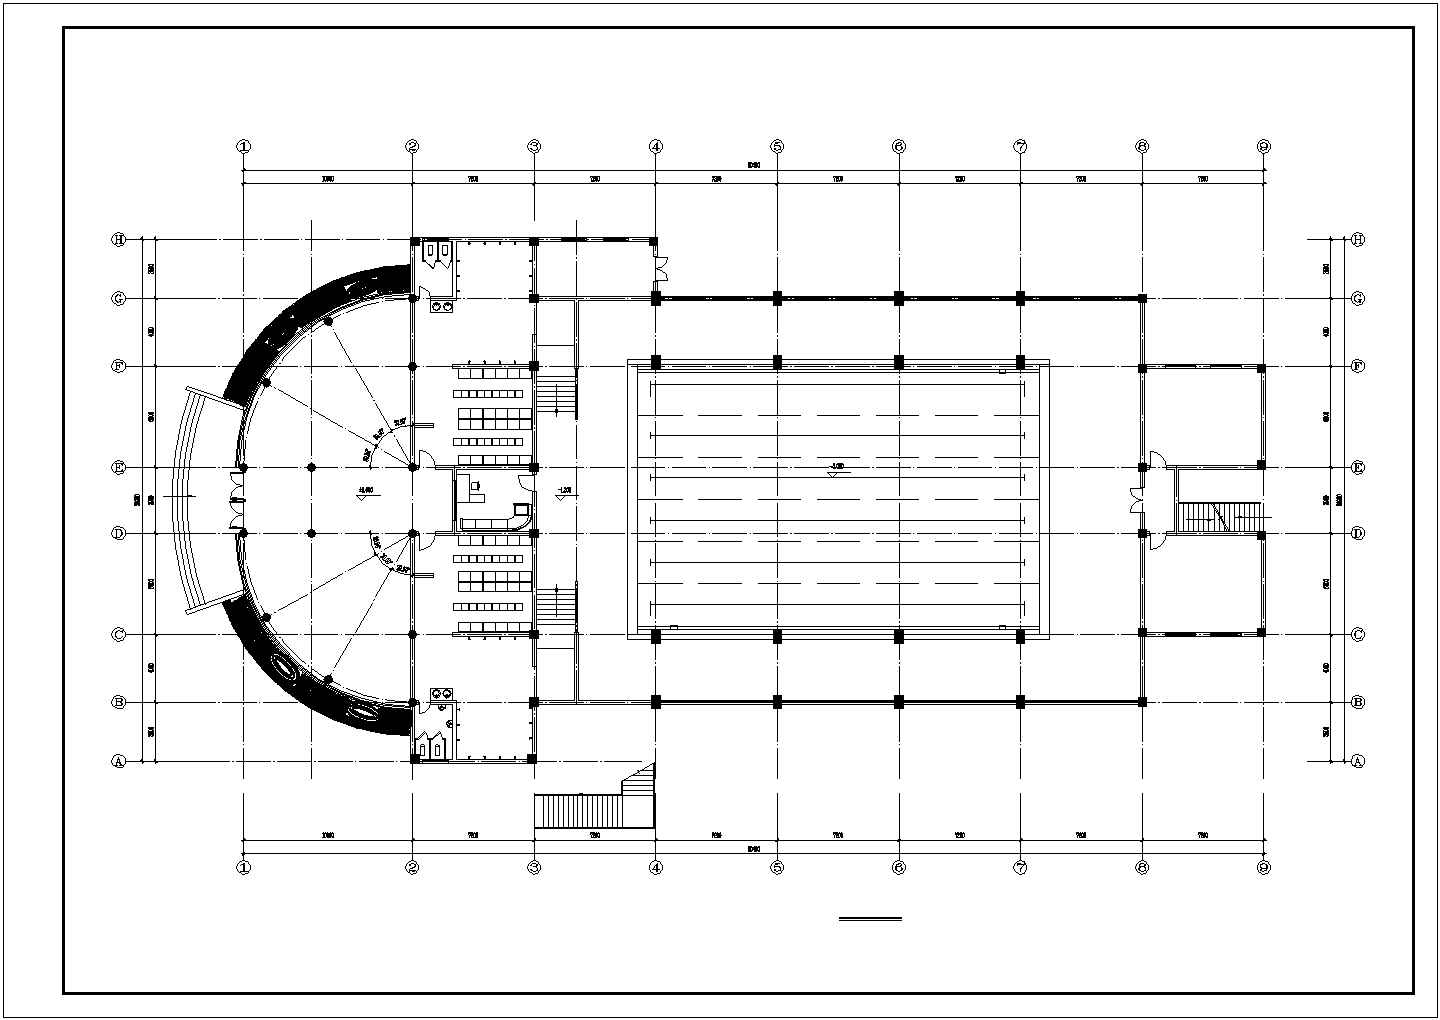 长60.4米 宽30.9米 2层室内体育馆建筑设计图【1-2层及屋顶平面 4个立面】